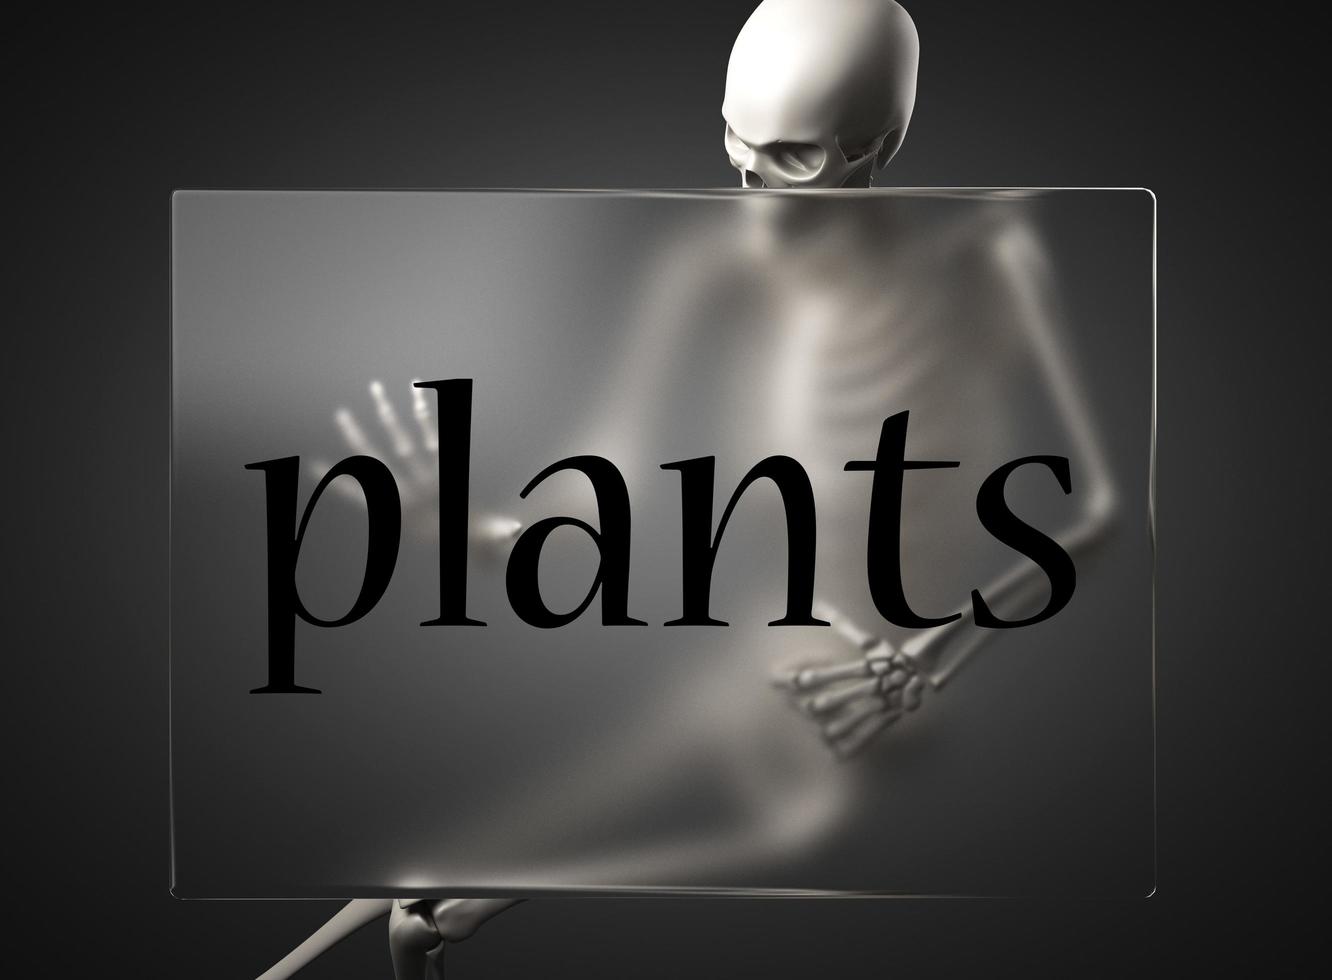 palabra de plantas en vidrio y esqueleto foto